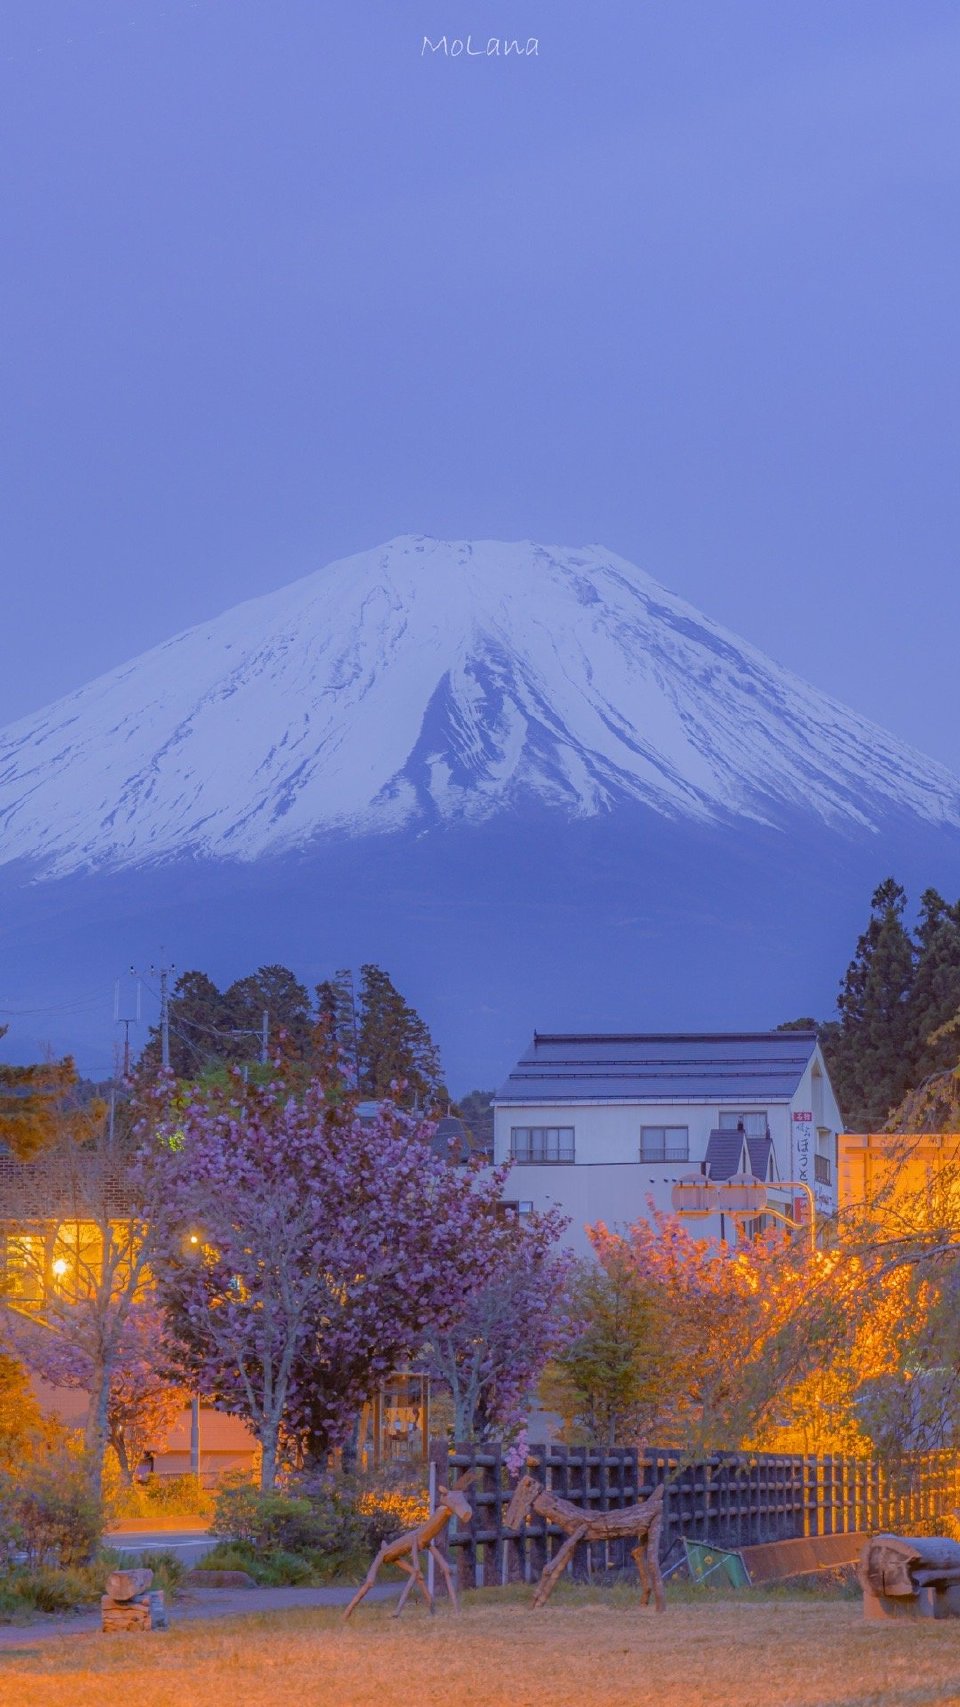 富士山下摄影:@molana